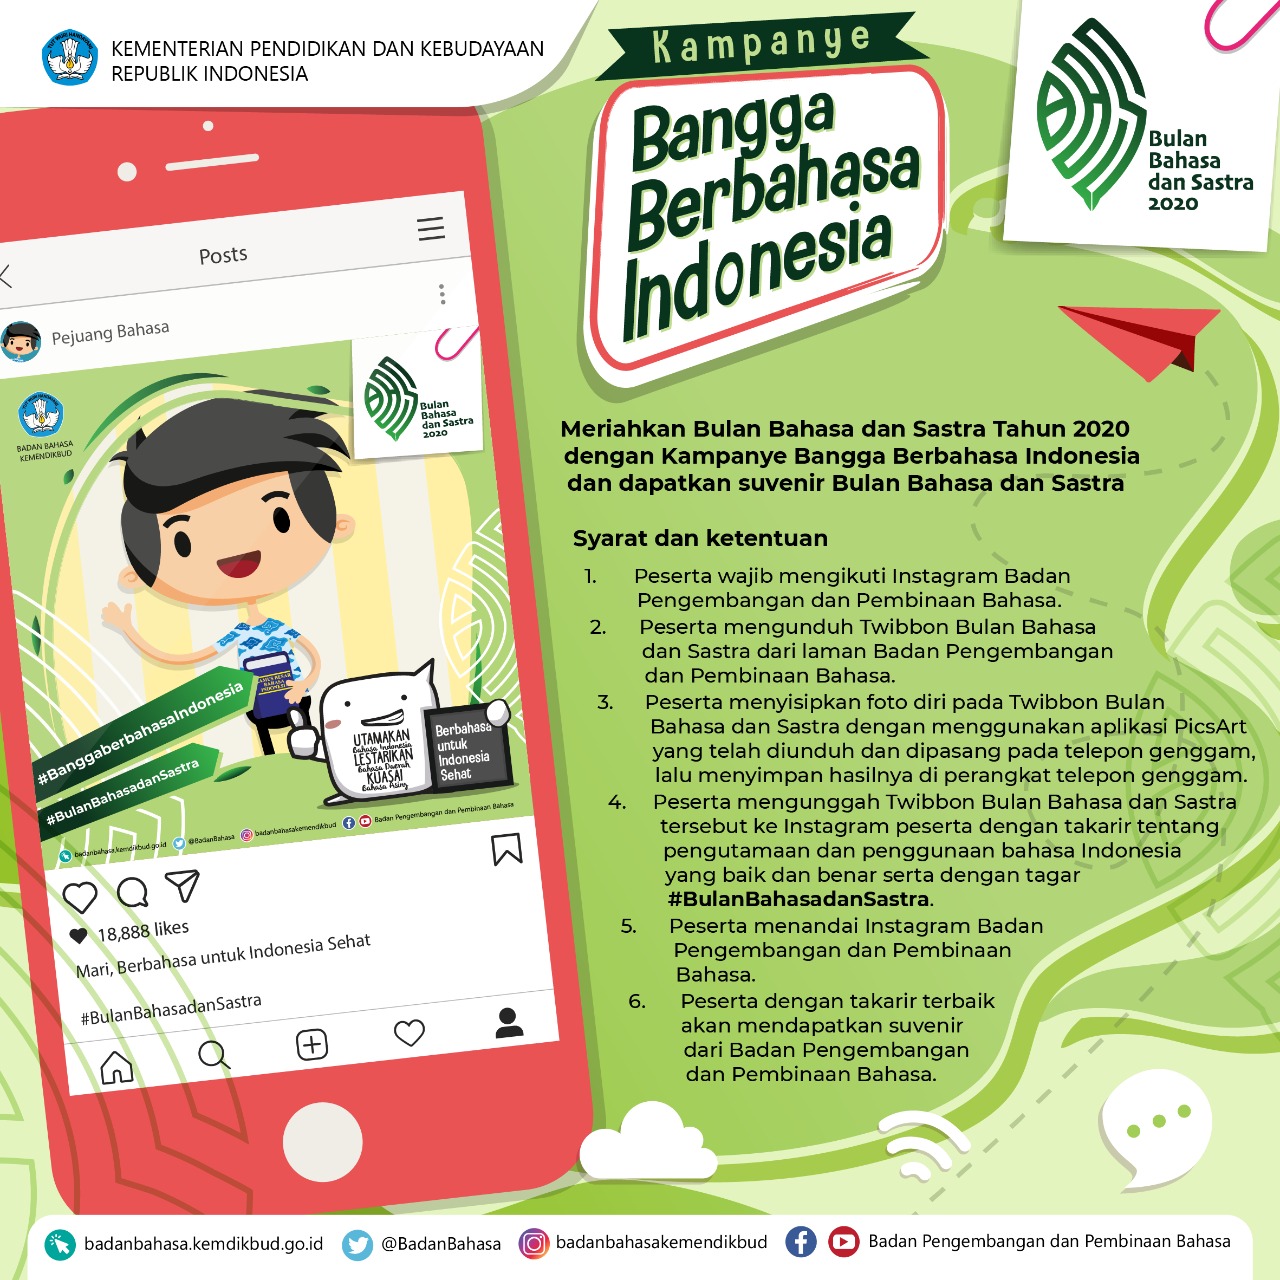 Meriahkan Bulan Bahasa dan Sastra Tahun 2020 dengan Kampanye Bangga Berbahasa Indonesia